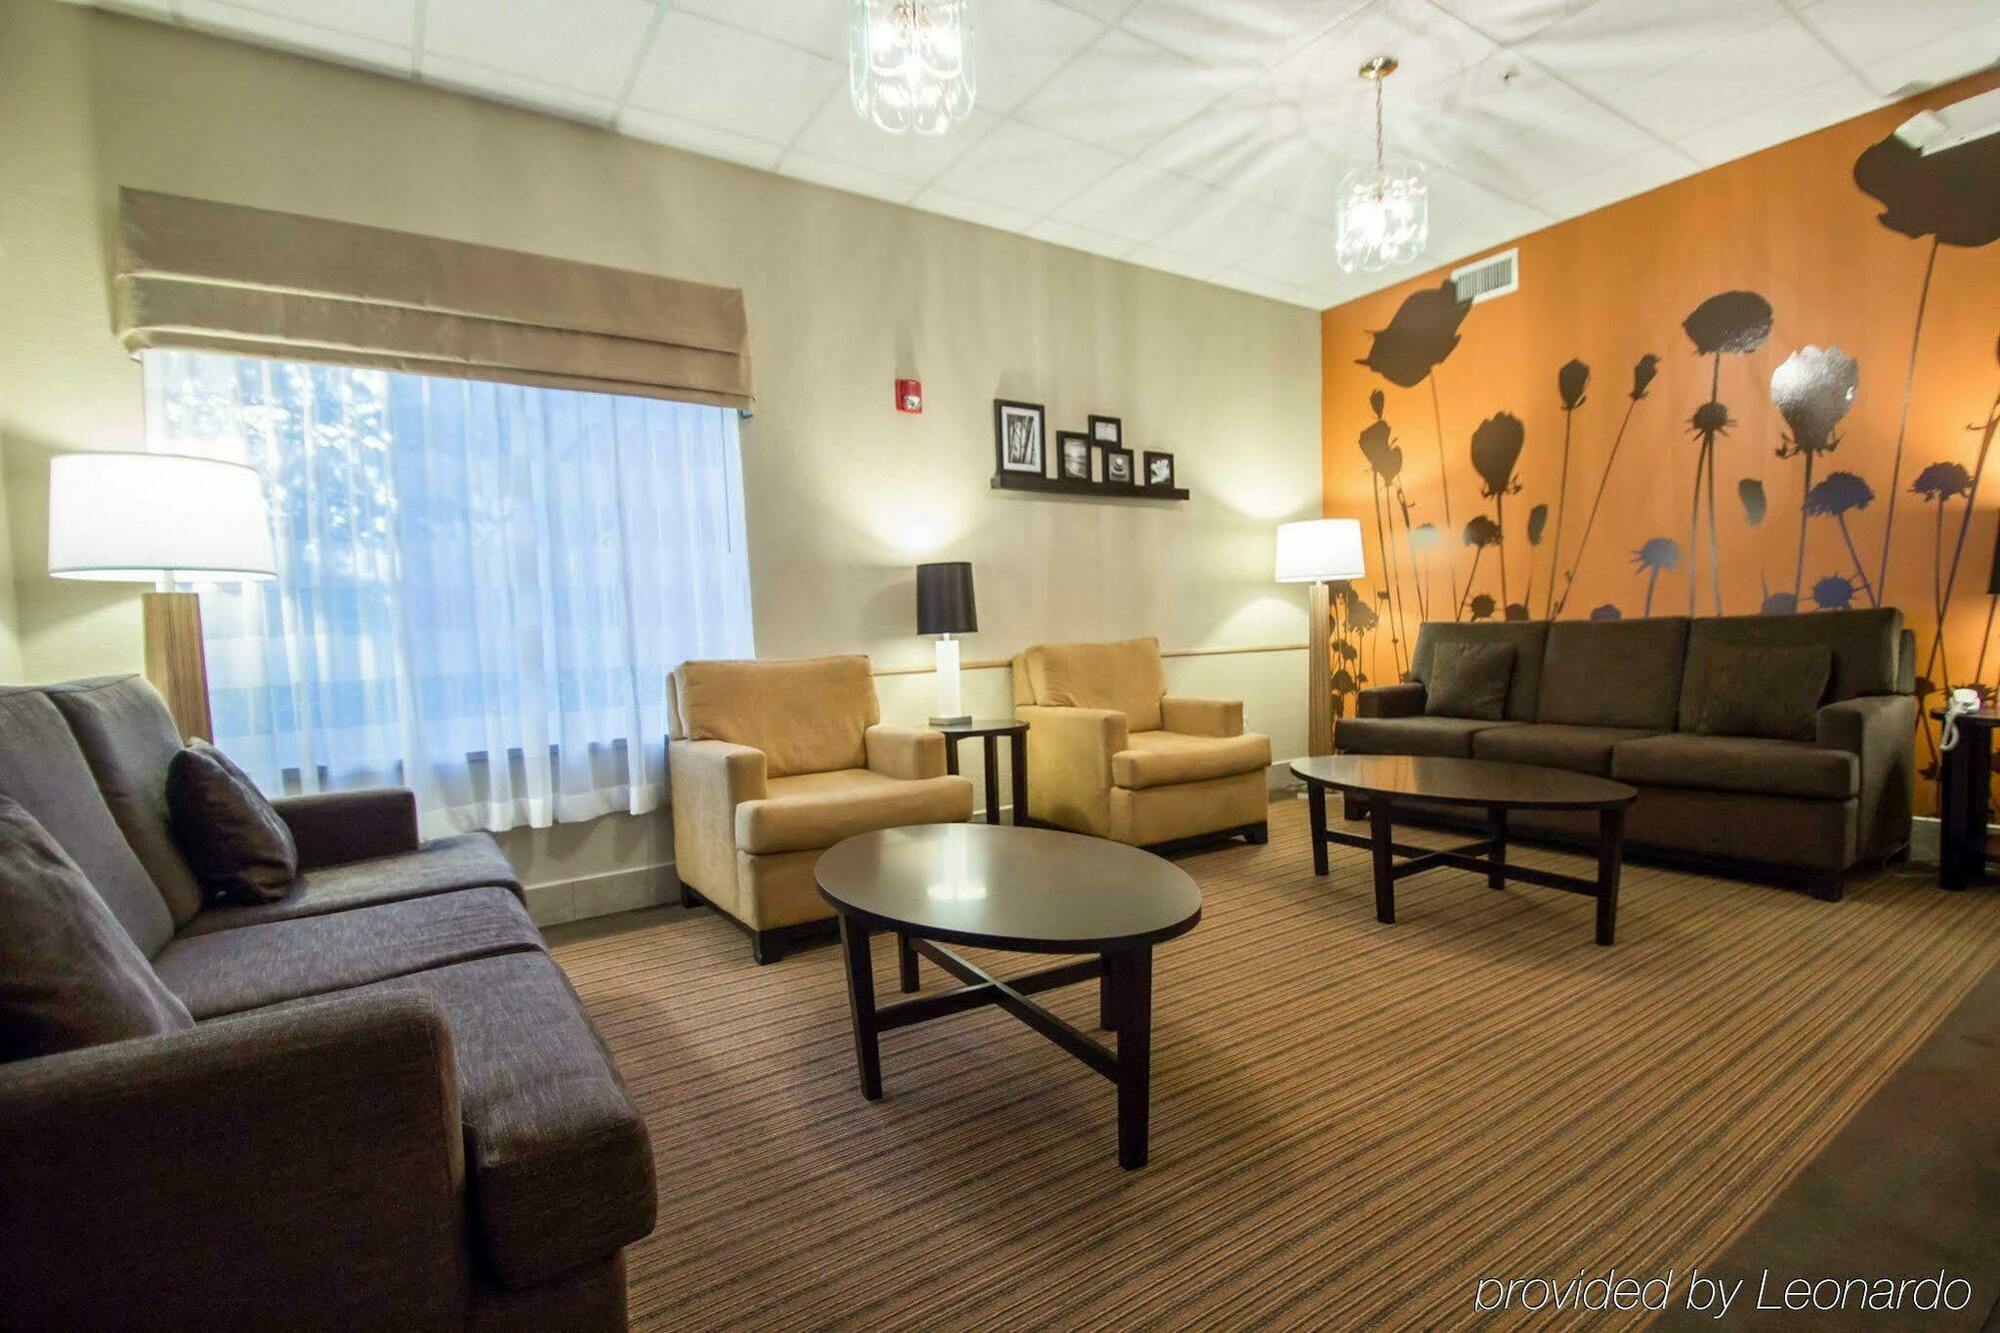 Sleep Inn & Suites Ocala - Belleview Marion Oaks Экстерьер фото